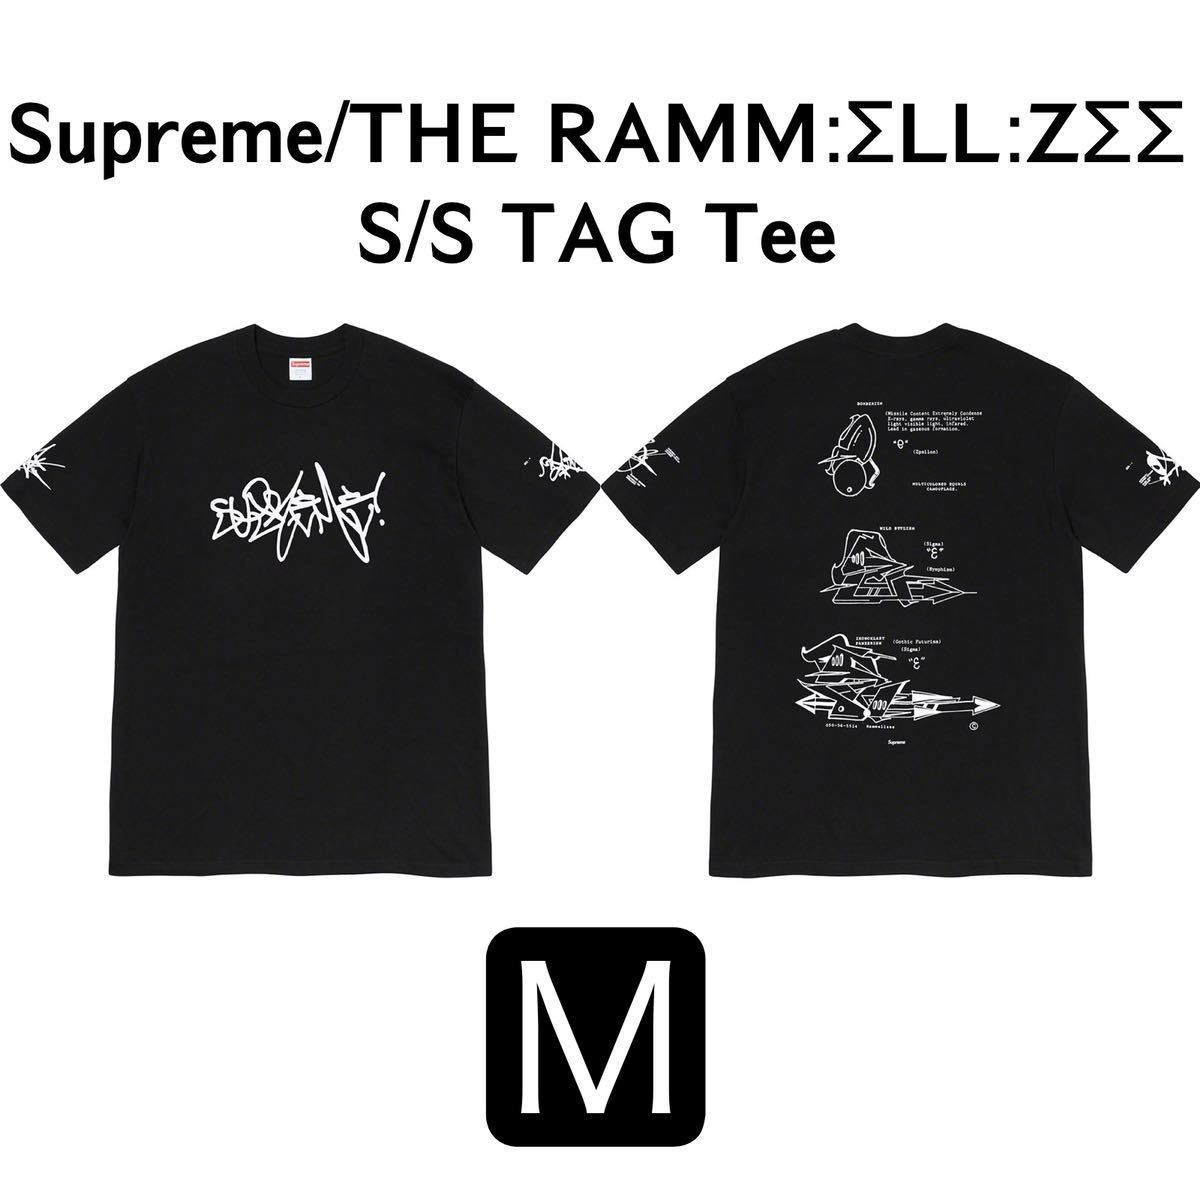 Supreme シュプリーム 20ss ラメルジー THE RAMMELLZEE S/S TAG Tee 両面プリント タギング Tシャツ 黒 Black ブラック M 新品